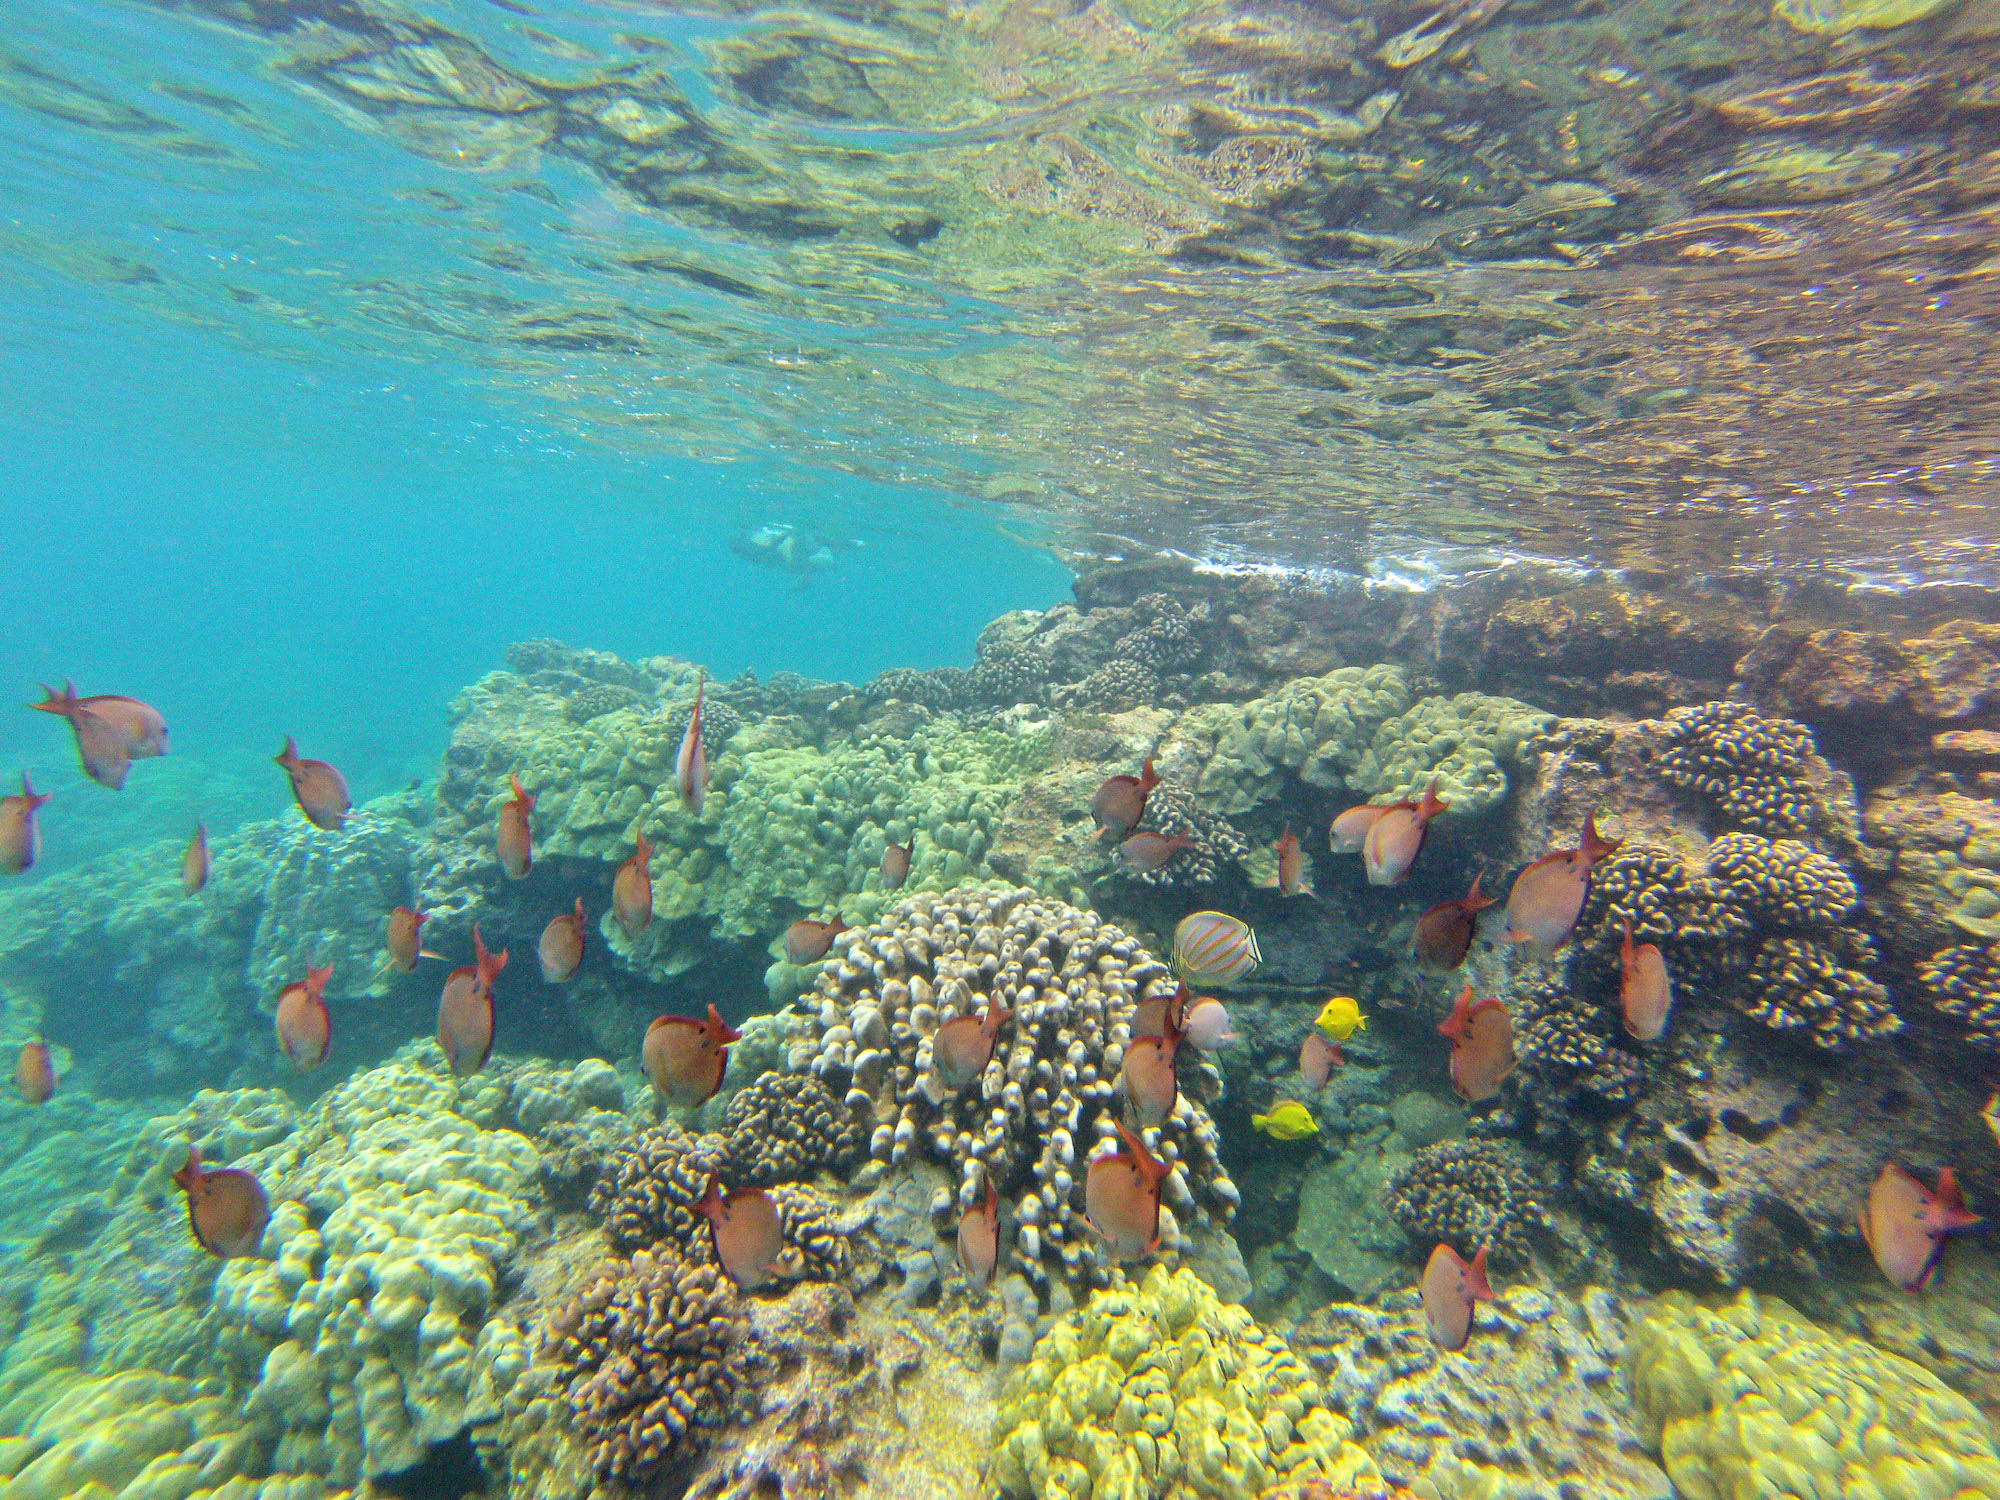 Fish at a coral reef